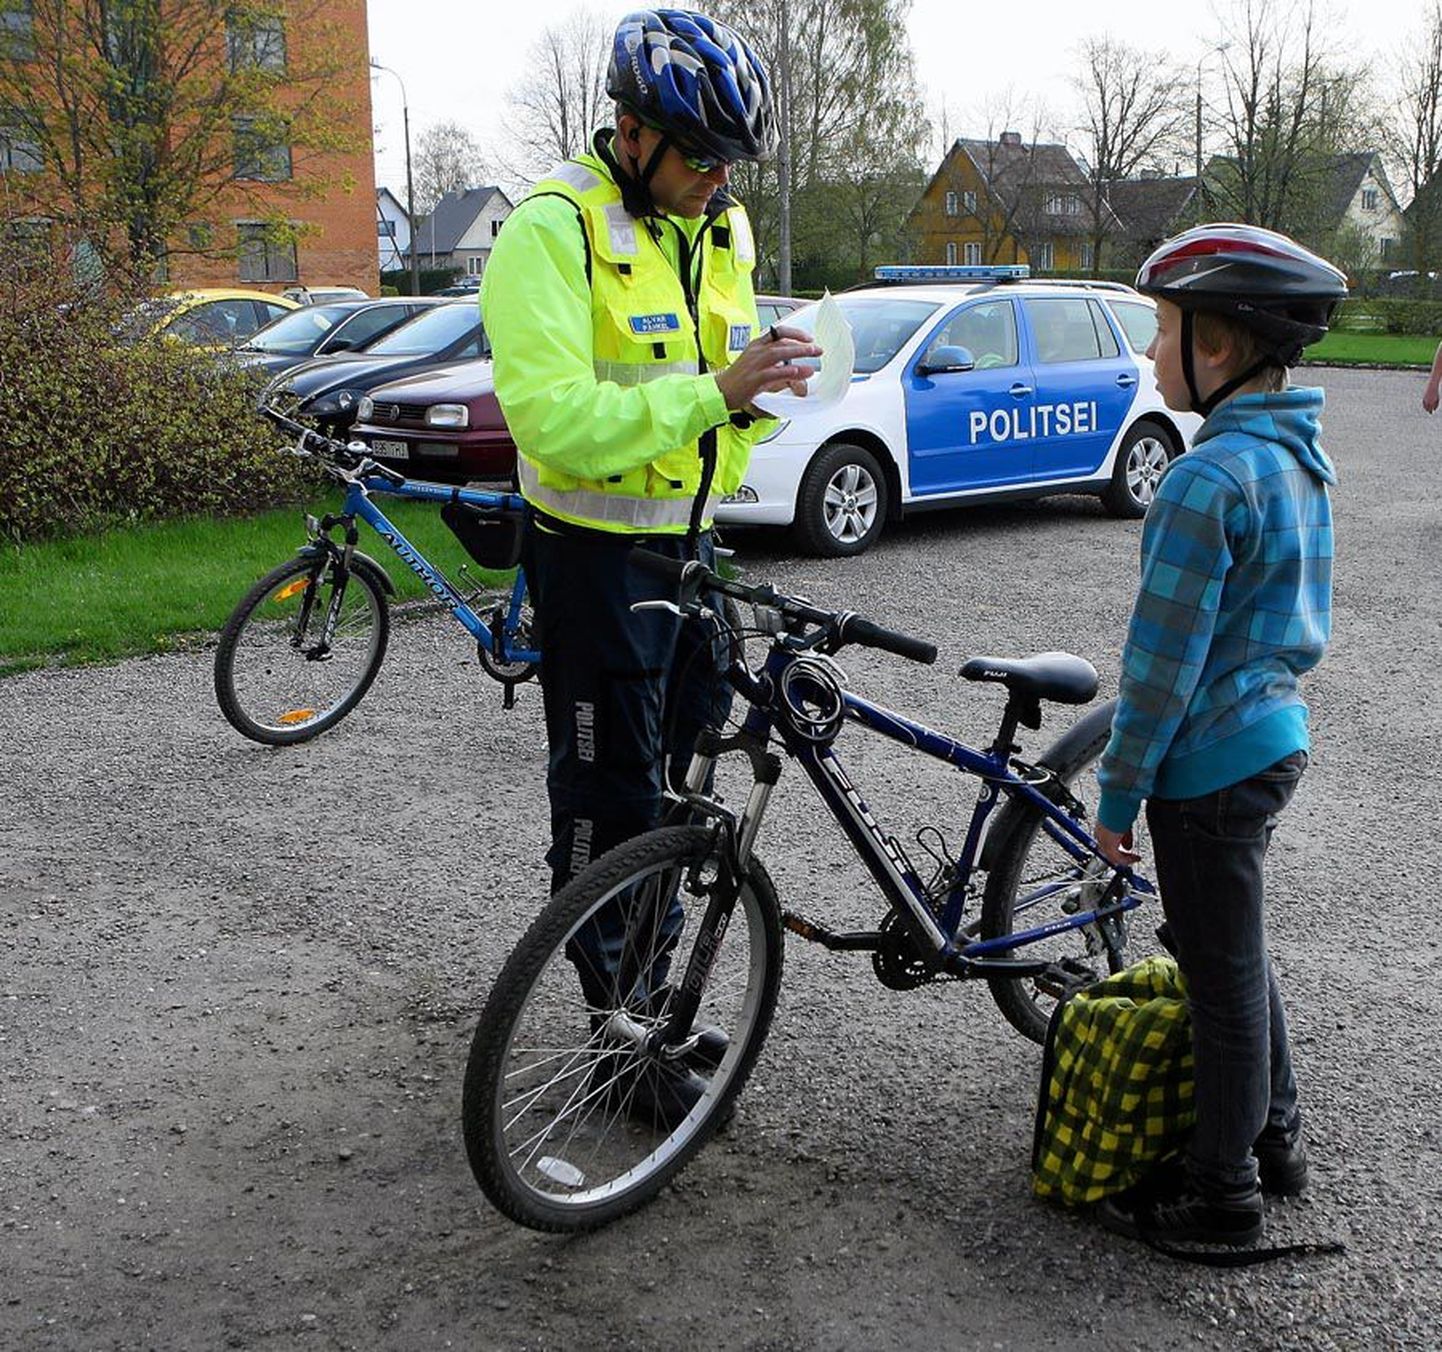 Sellel jalgratturil oli kõik korras peale selle, et tema sõiduvahendil polnud signaalkella. Politseinik Alvar Pähkli sõnul nõuab kella liikluseeskiri, sest linnas sõites tagab see ratturi ja jalakäijate ohutuse.